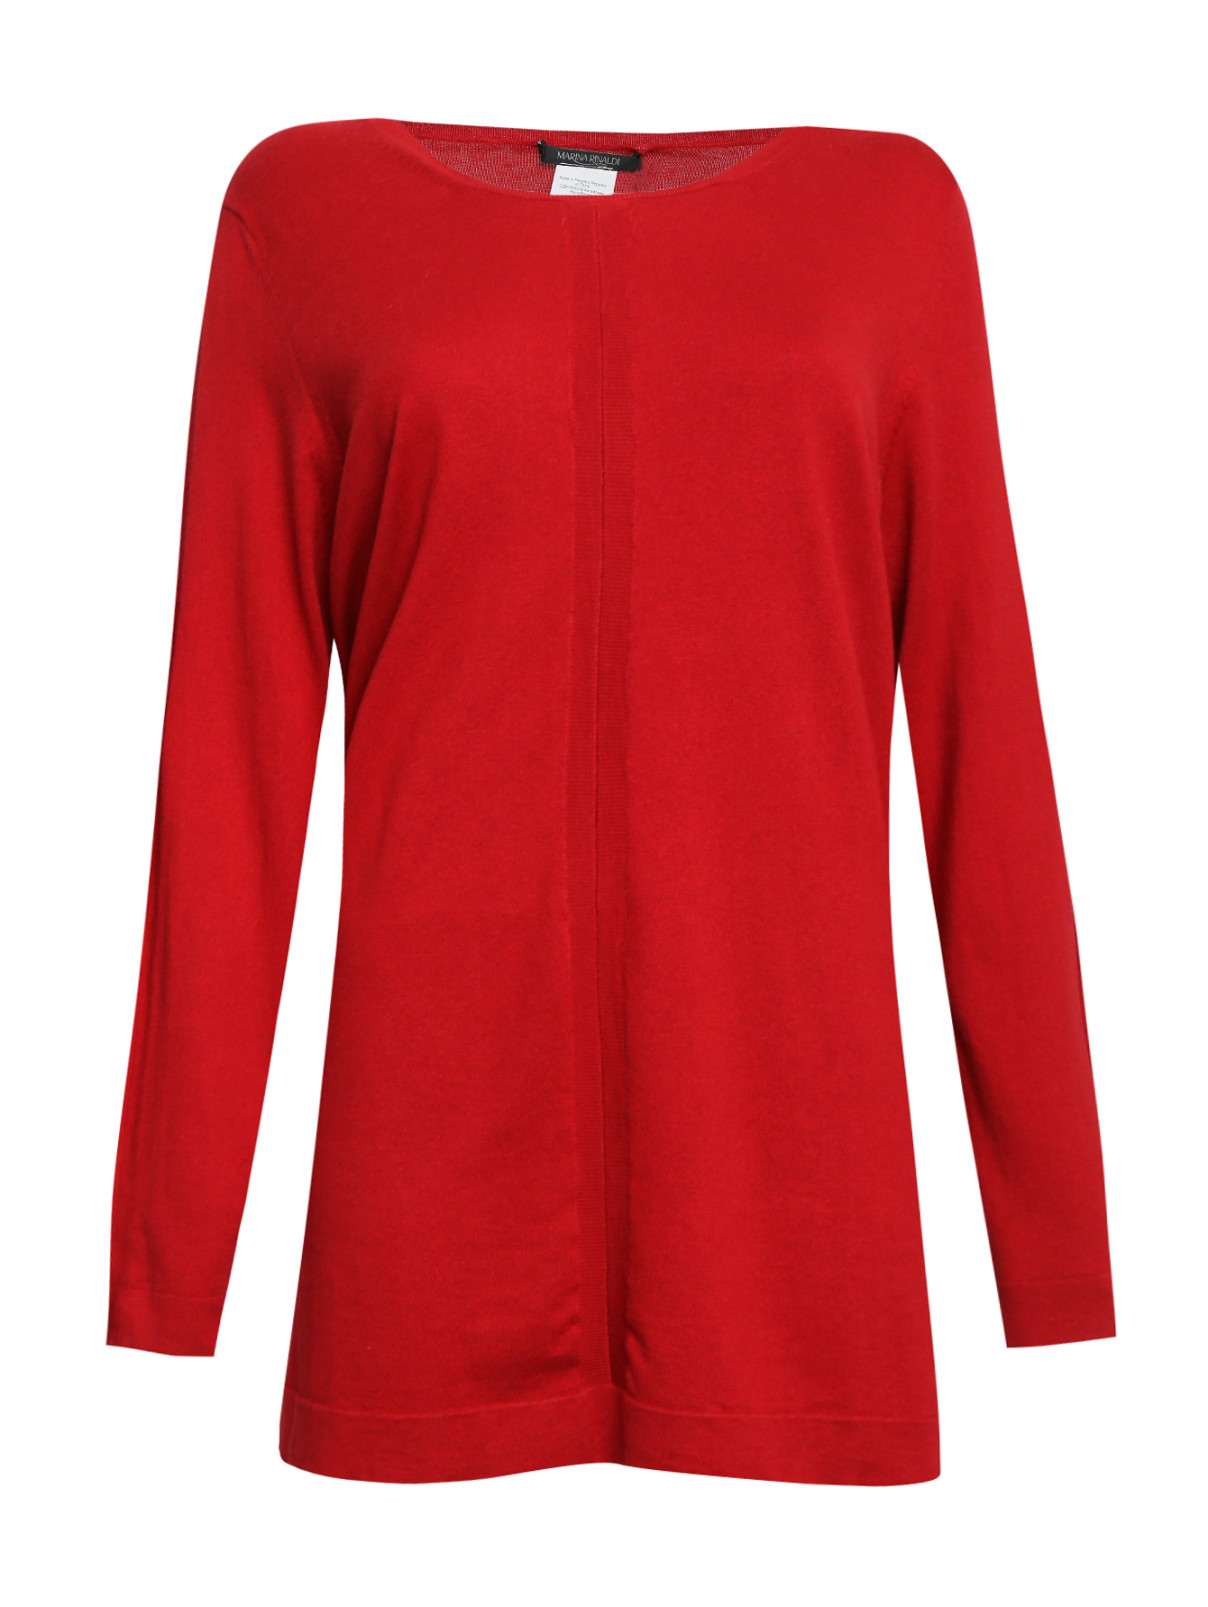 Джемпер из шелка и хлопка свободного кроя Marina Rinaldi  –  Общий вид  – Цвет:  Красный